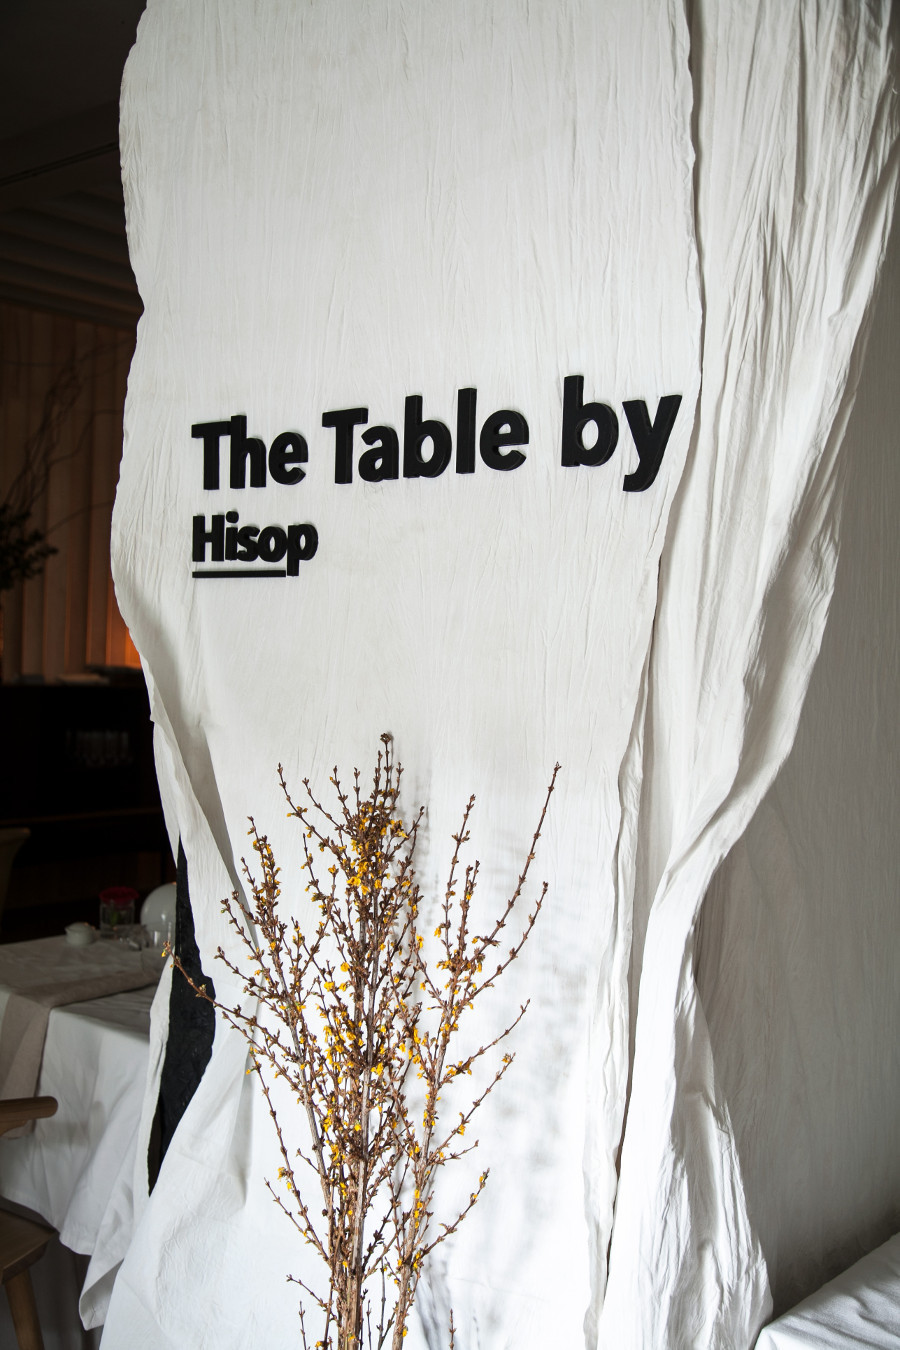 imagen 9 de Hisop estará en The Table by hasta el 7 de mayo.